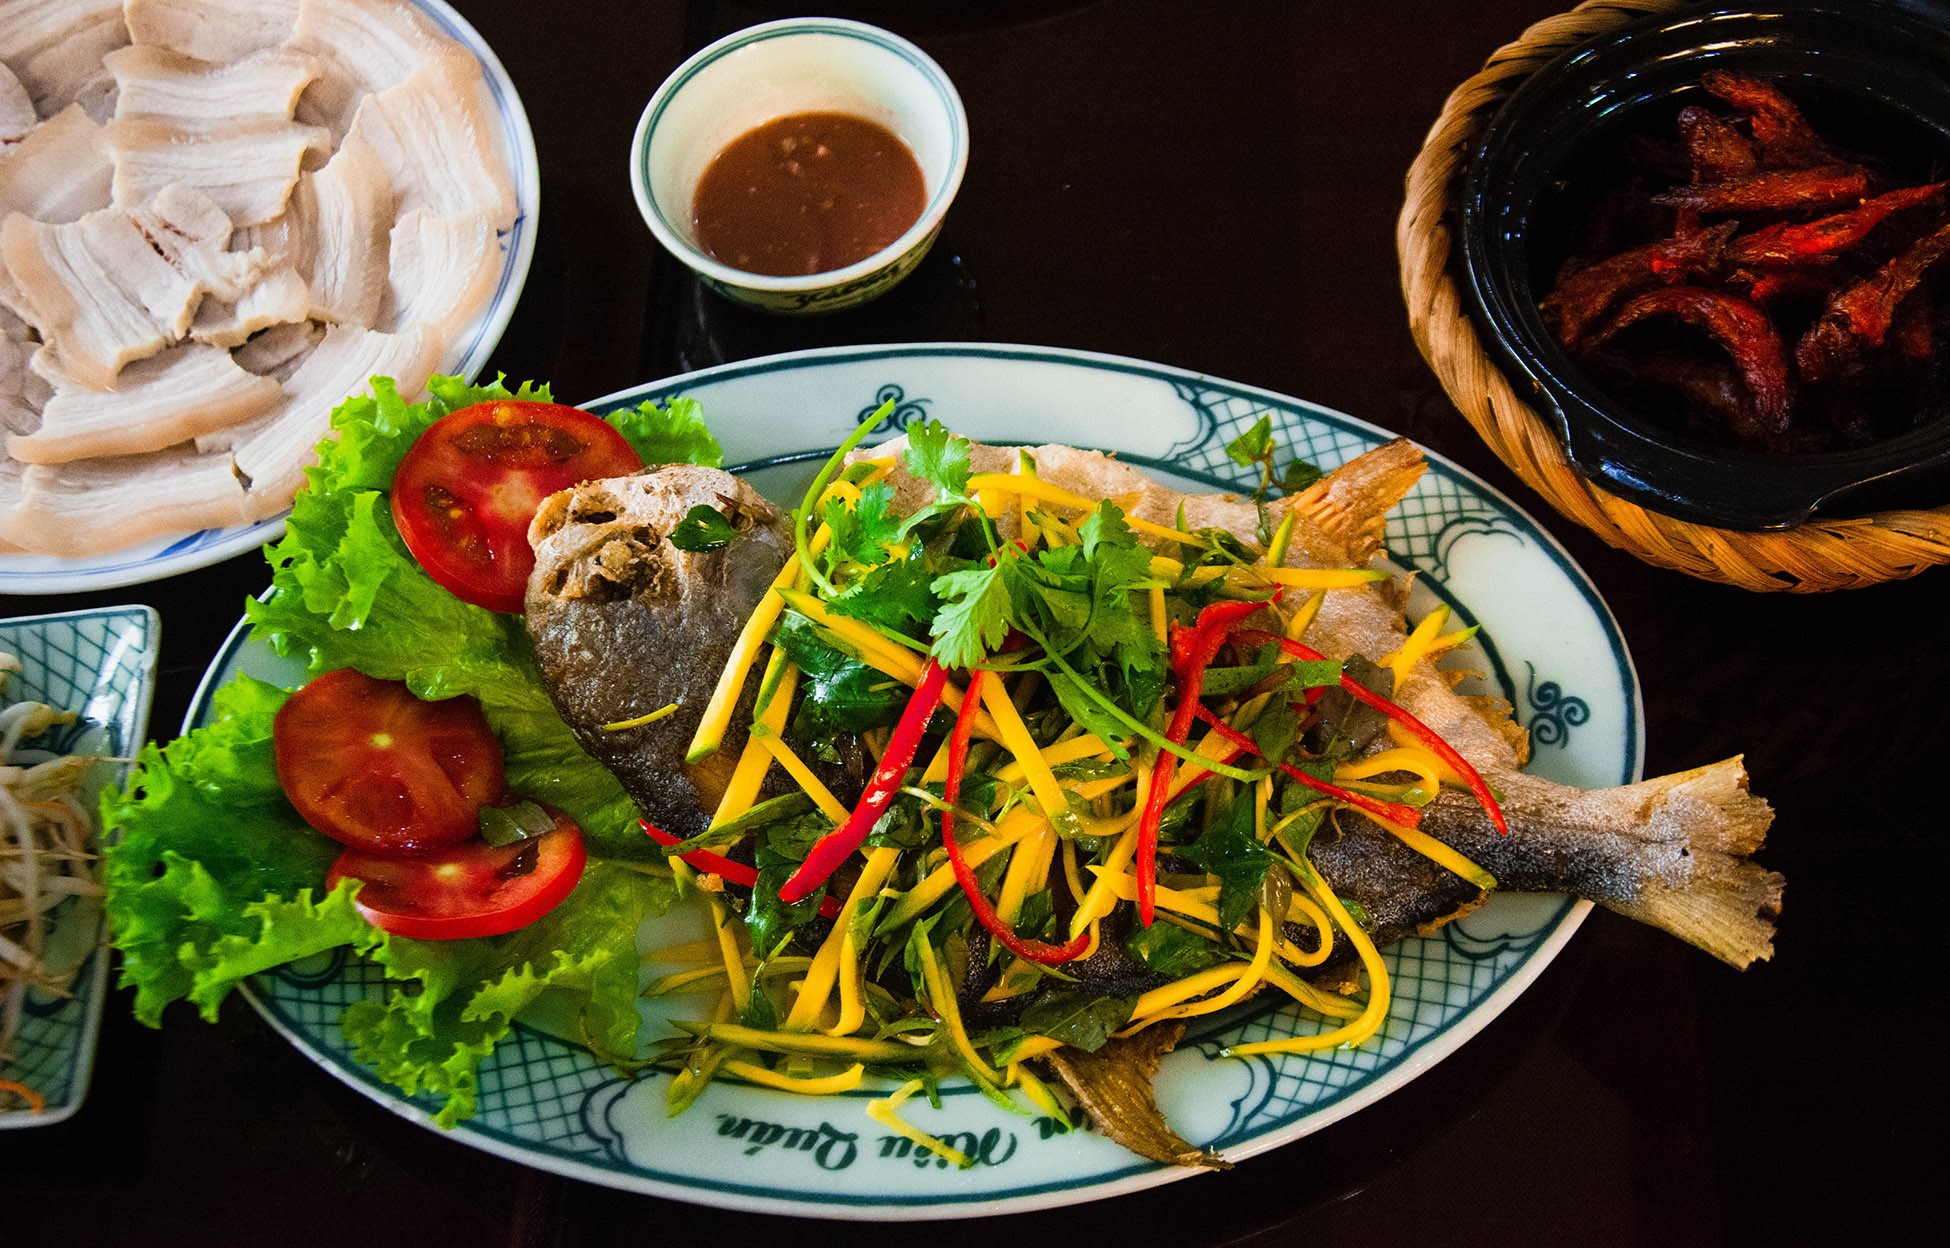 Nhà hàng cơm niêu lâu đời nhất tại Đà Nẵng ai cũng biết - Ảnh 7.